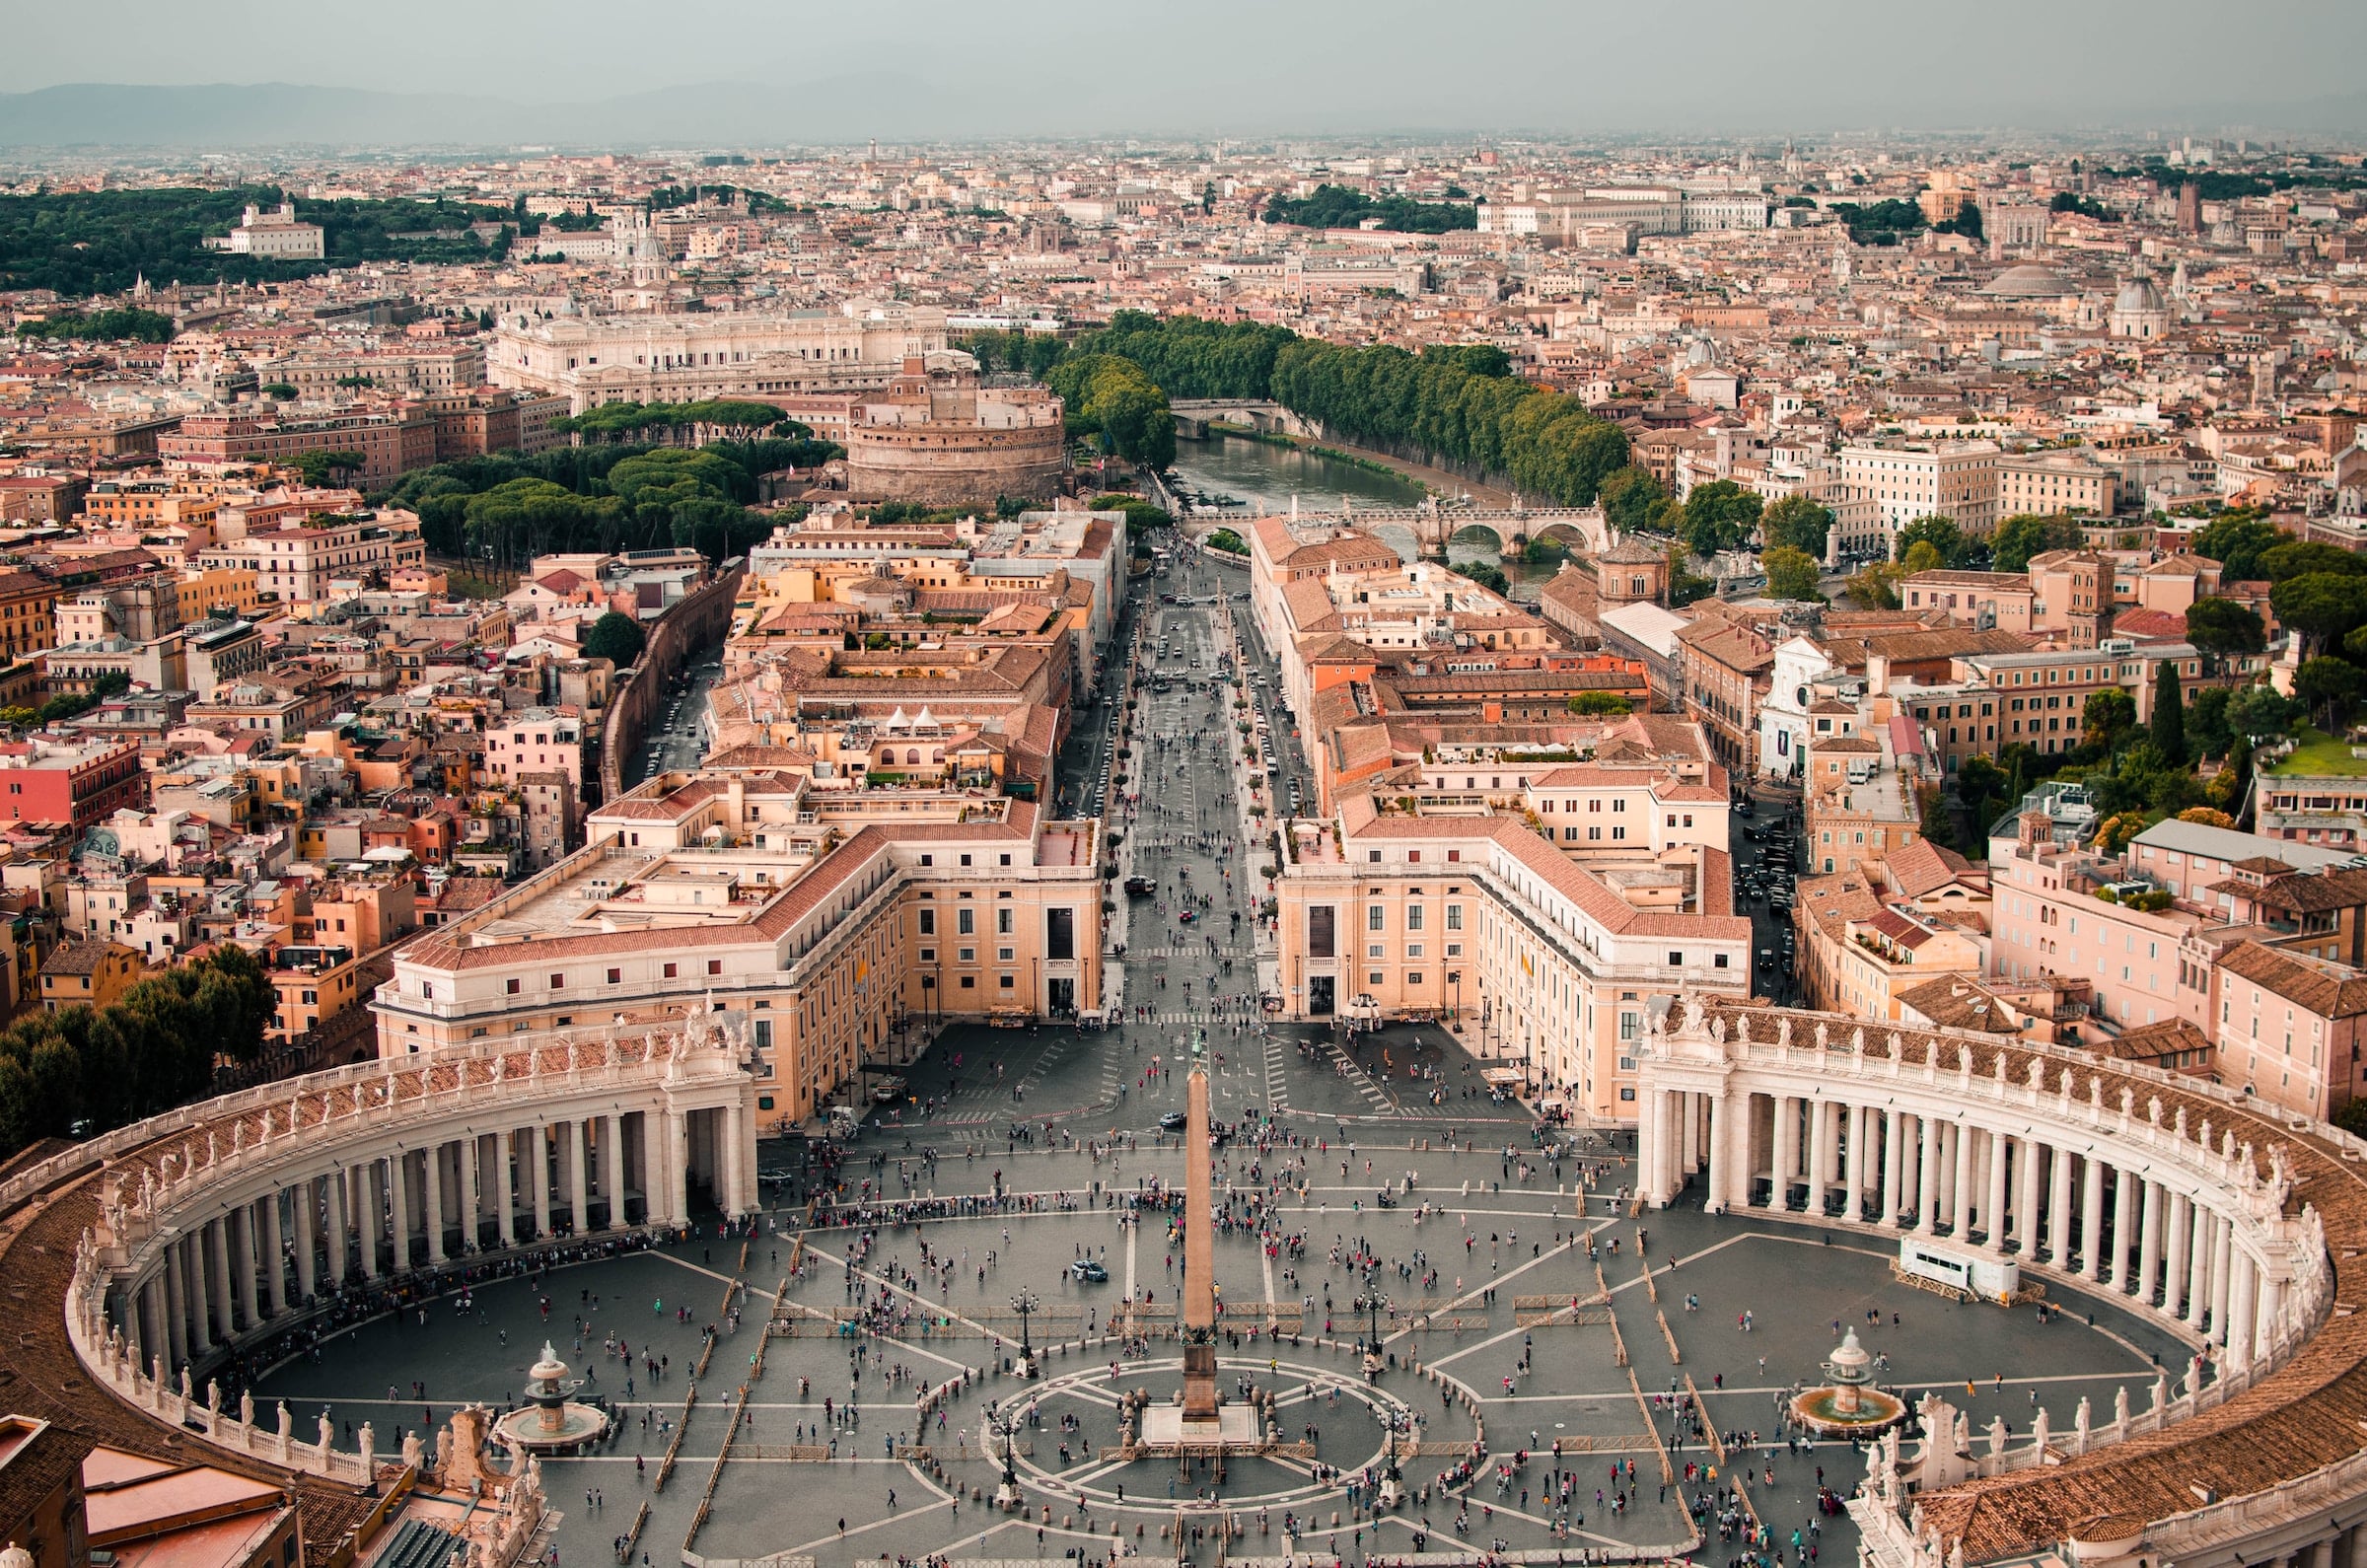 El país más pequeño del mundo en términos de superficie terrestre es la Ciudad del Vaticano